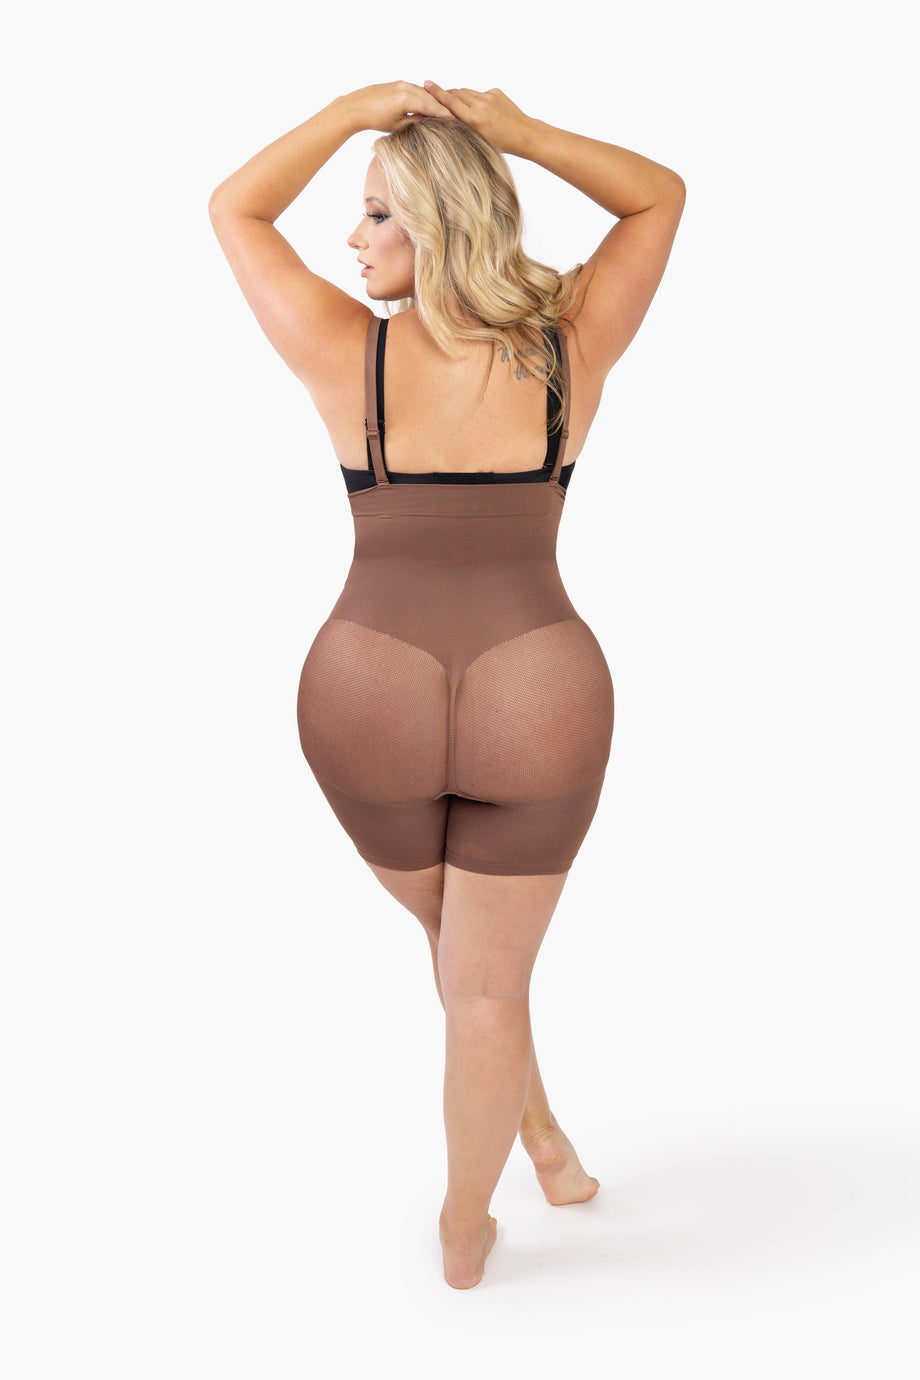 Butt Lifter Bodysuit Body Shaper Tummy Control Shapewear Thigh